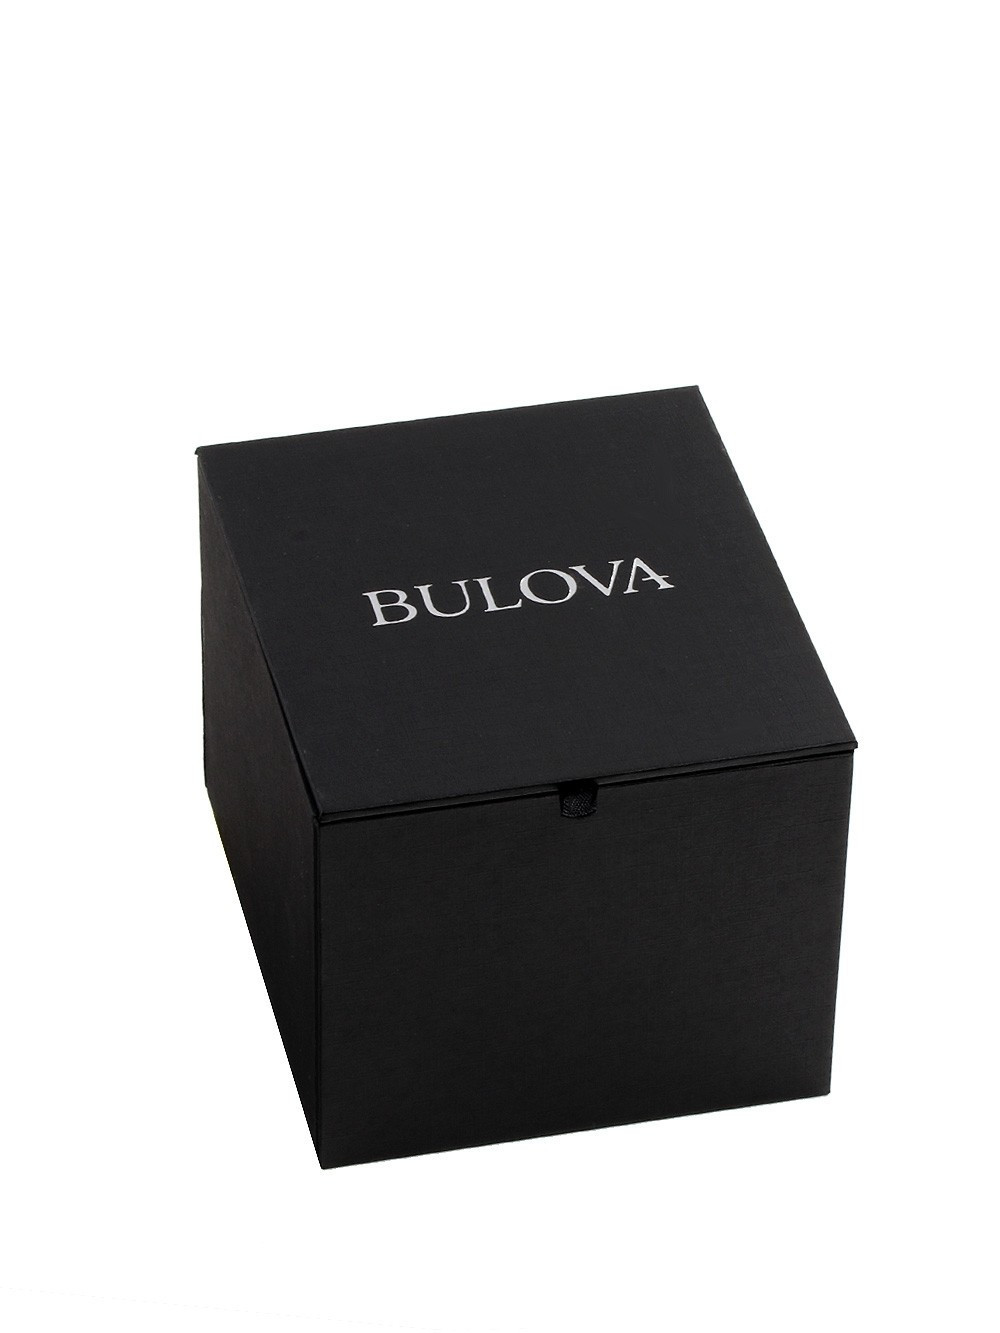 Zegarek damski Bulova Sutton 98R263 złoty